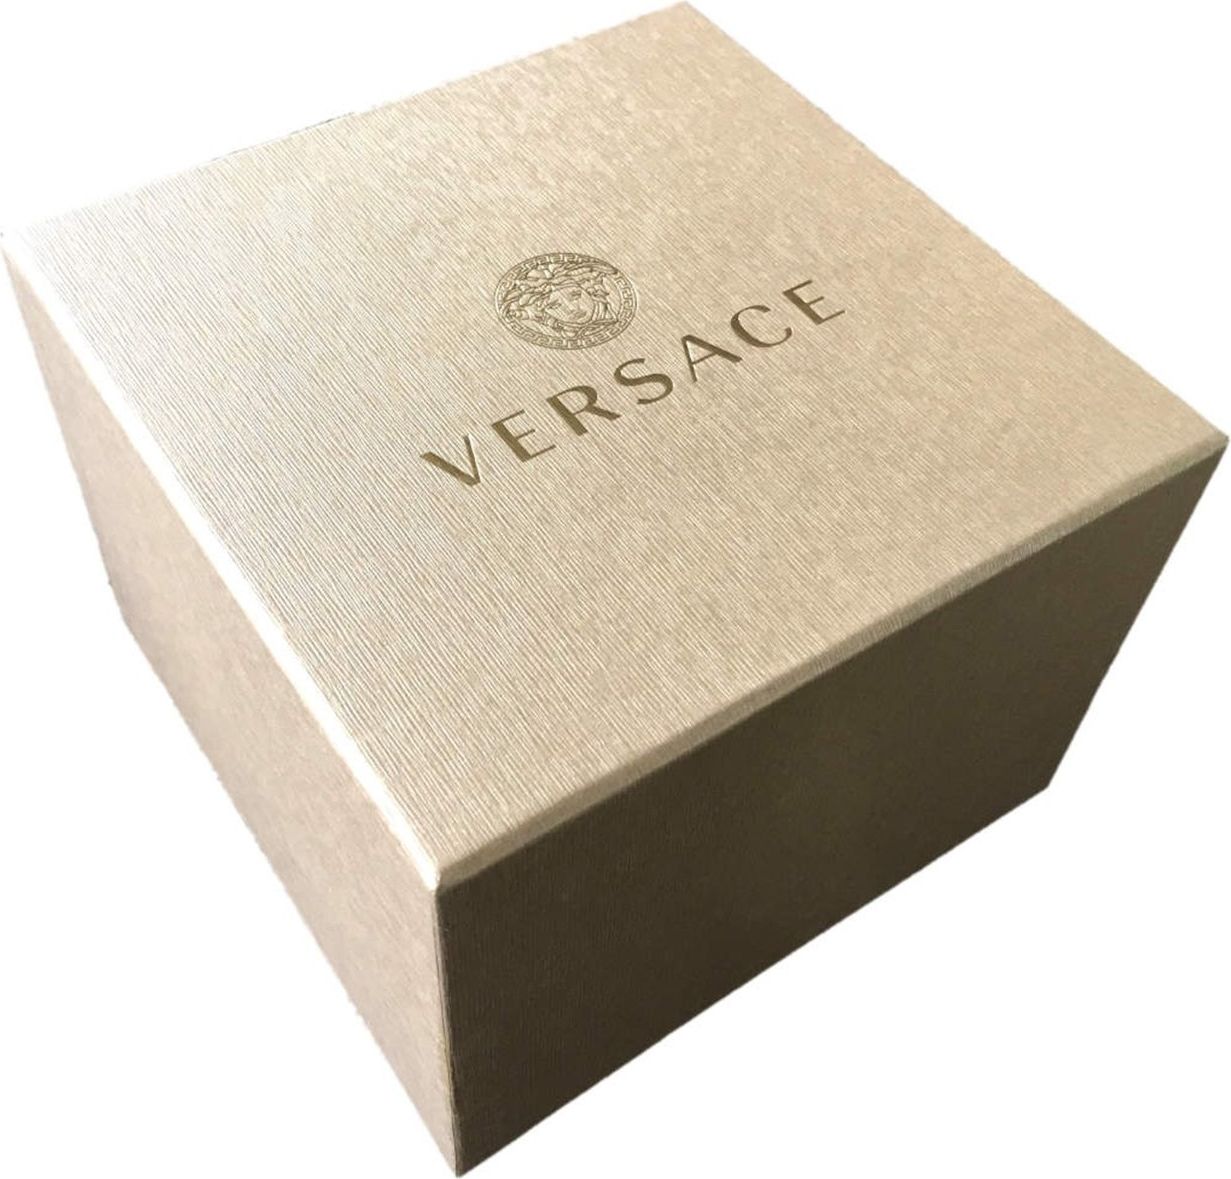 Versace VEVD00419 Pop Chic dames horloge 36mm Zilver